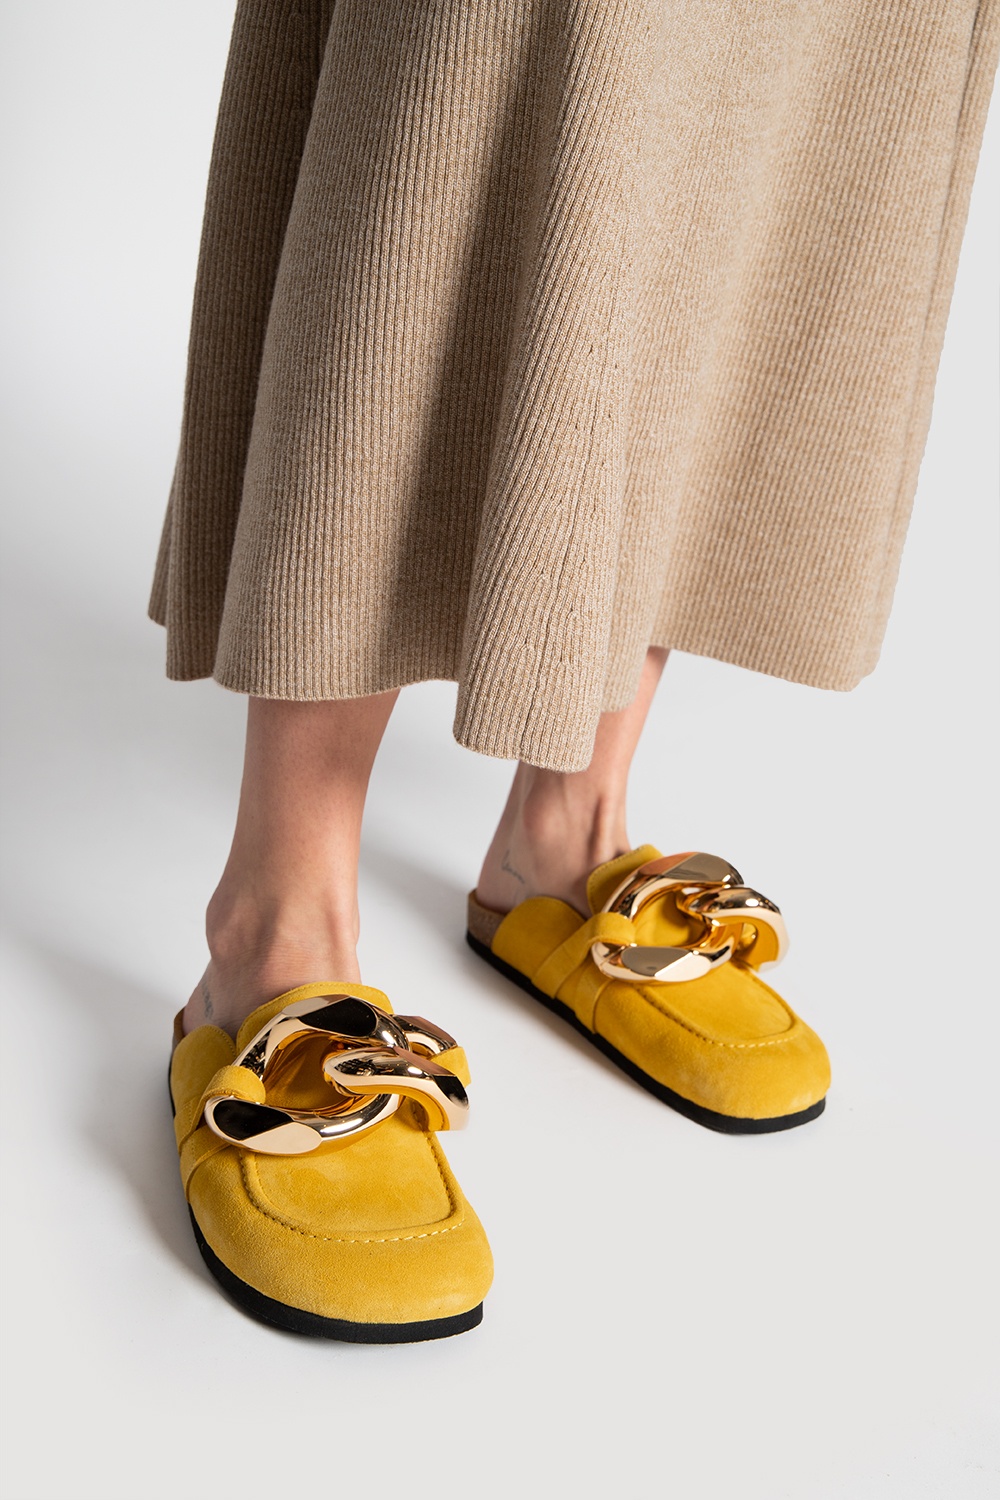 黄色麂皮穆勒鞋JW Anderson - GenesinlifeShops 中国